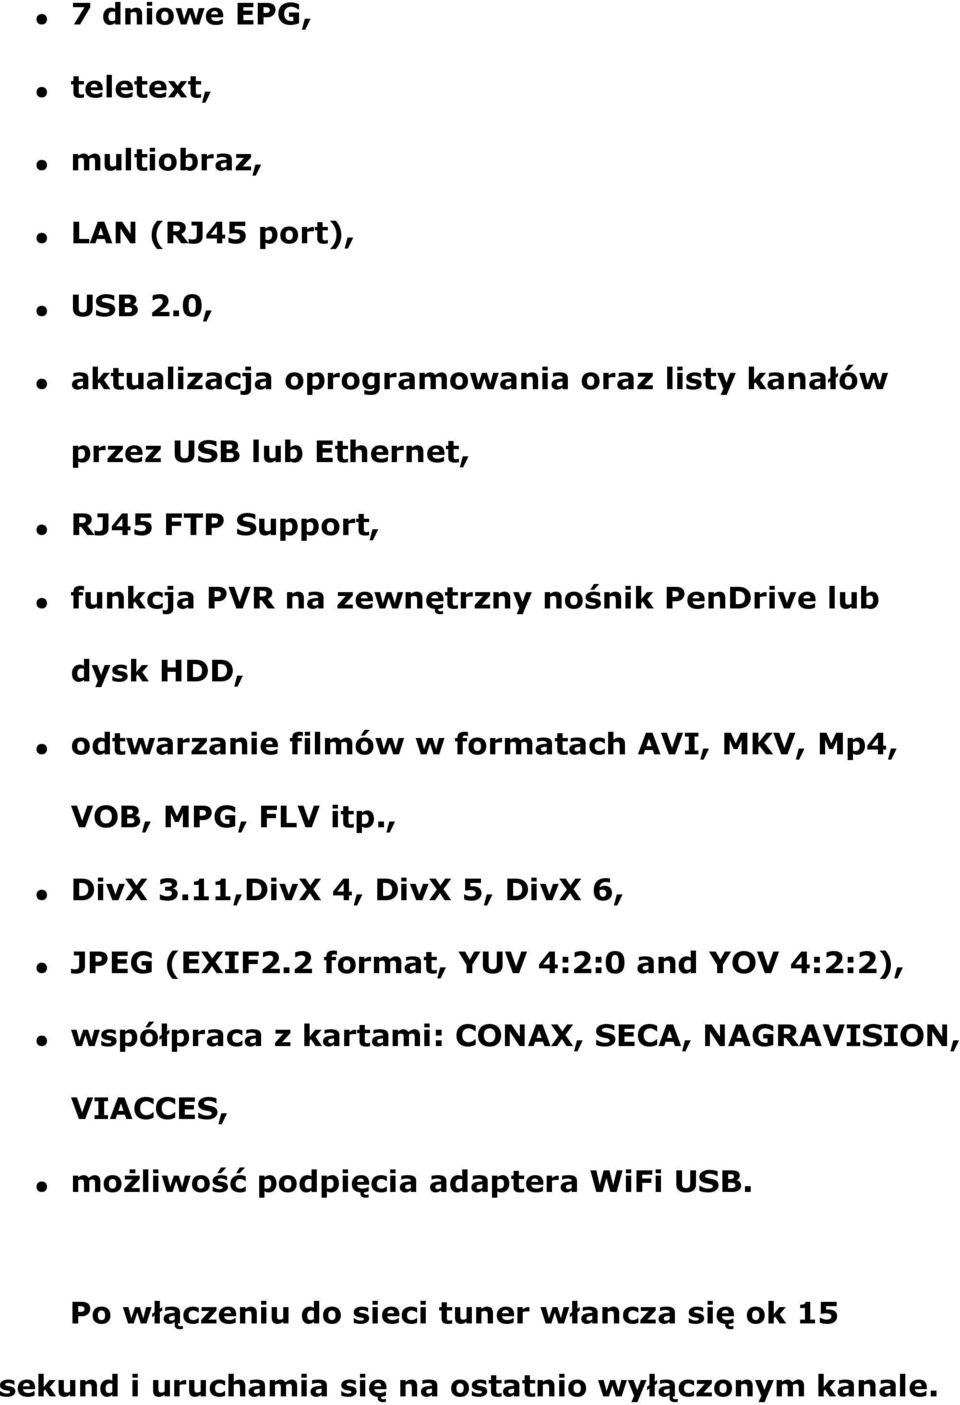 dysk HDD, odtwarzanie filmów w formatach AVI, MKV, Mp4, VOB, MPG, FLV itp., DivX 3.11,DivX 4, DivX 5, DivX 6, JPEG (EXIF2.